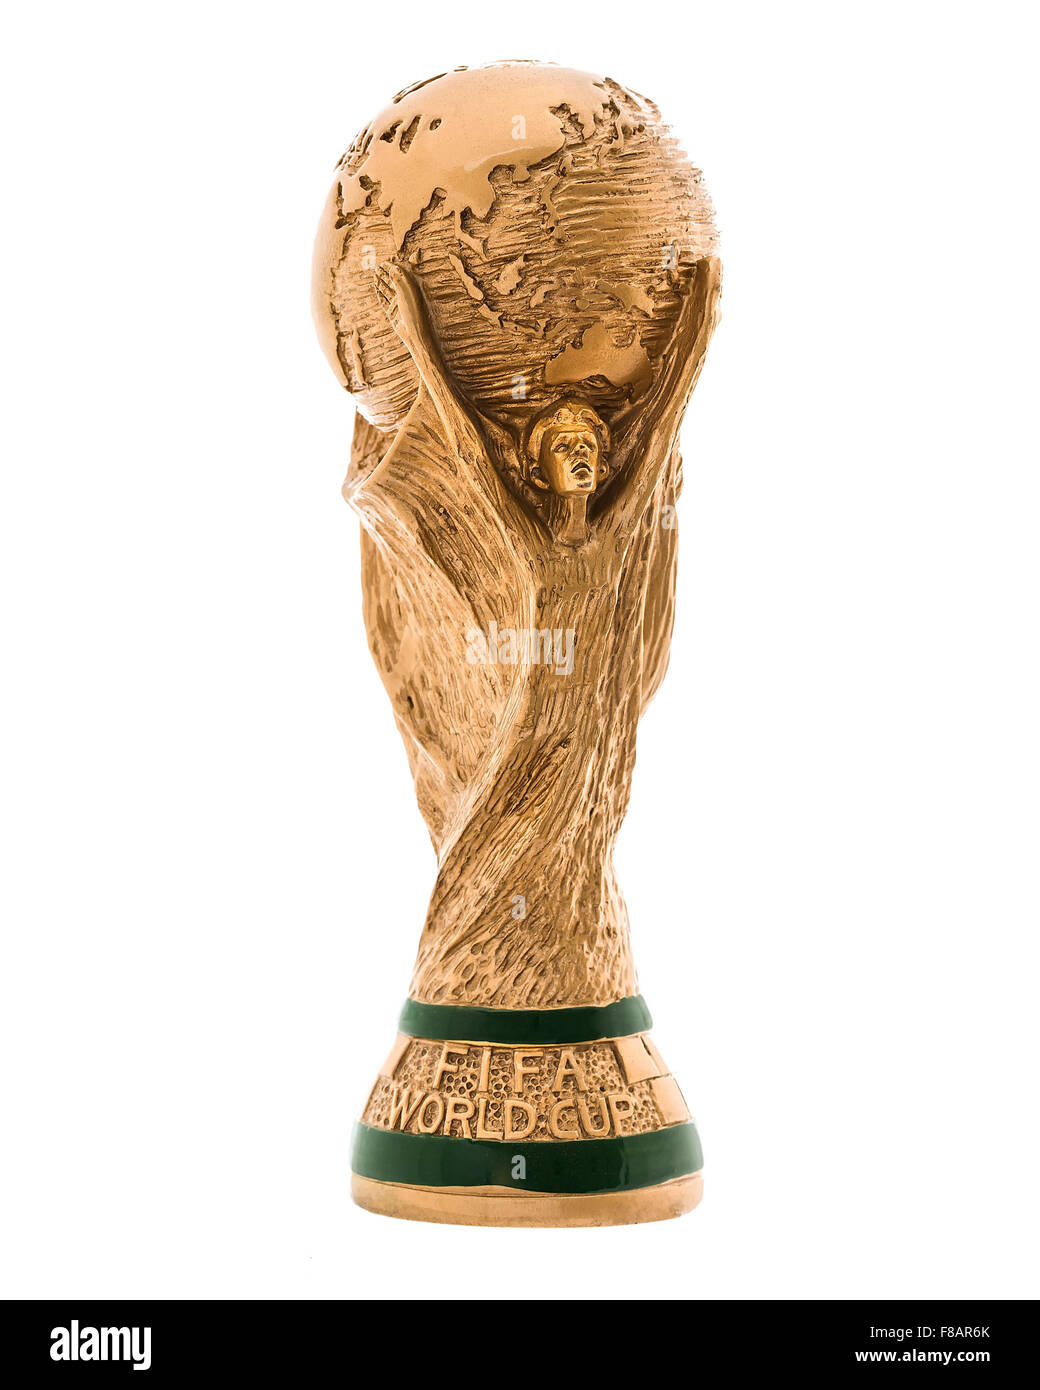 El Trofeo de la Copa Mundial de la FIFA sobre un fondo blanco, "el trofeo de la Copa Mundial de la FIFA', fue introducido en 1974 Foto de stock